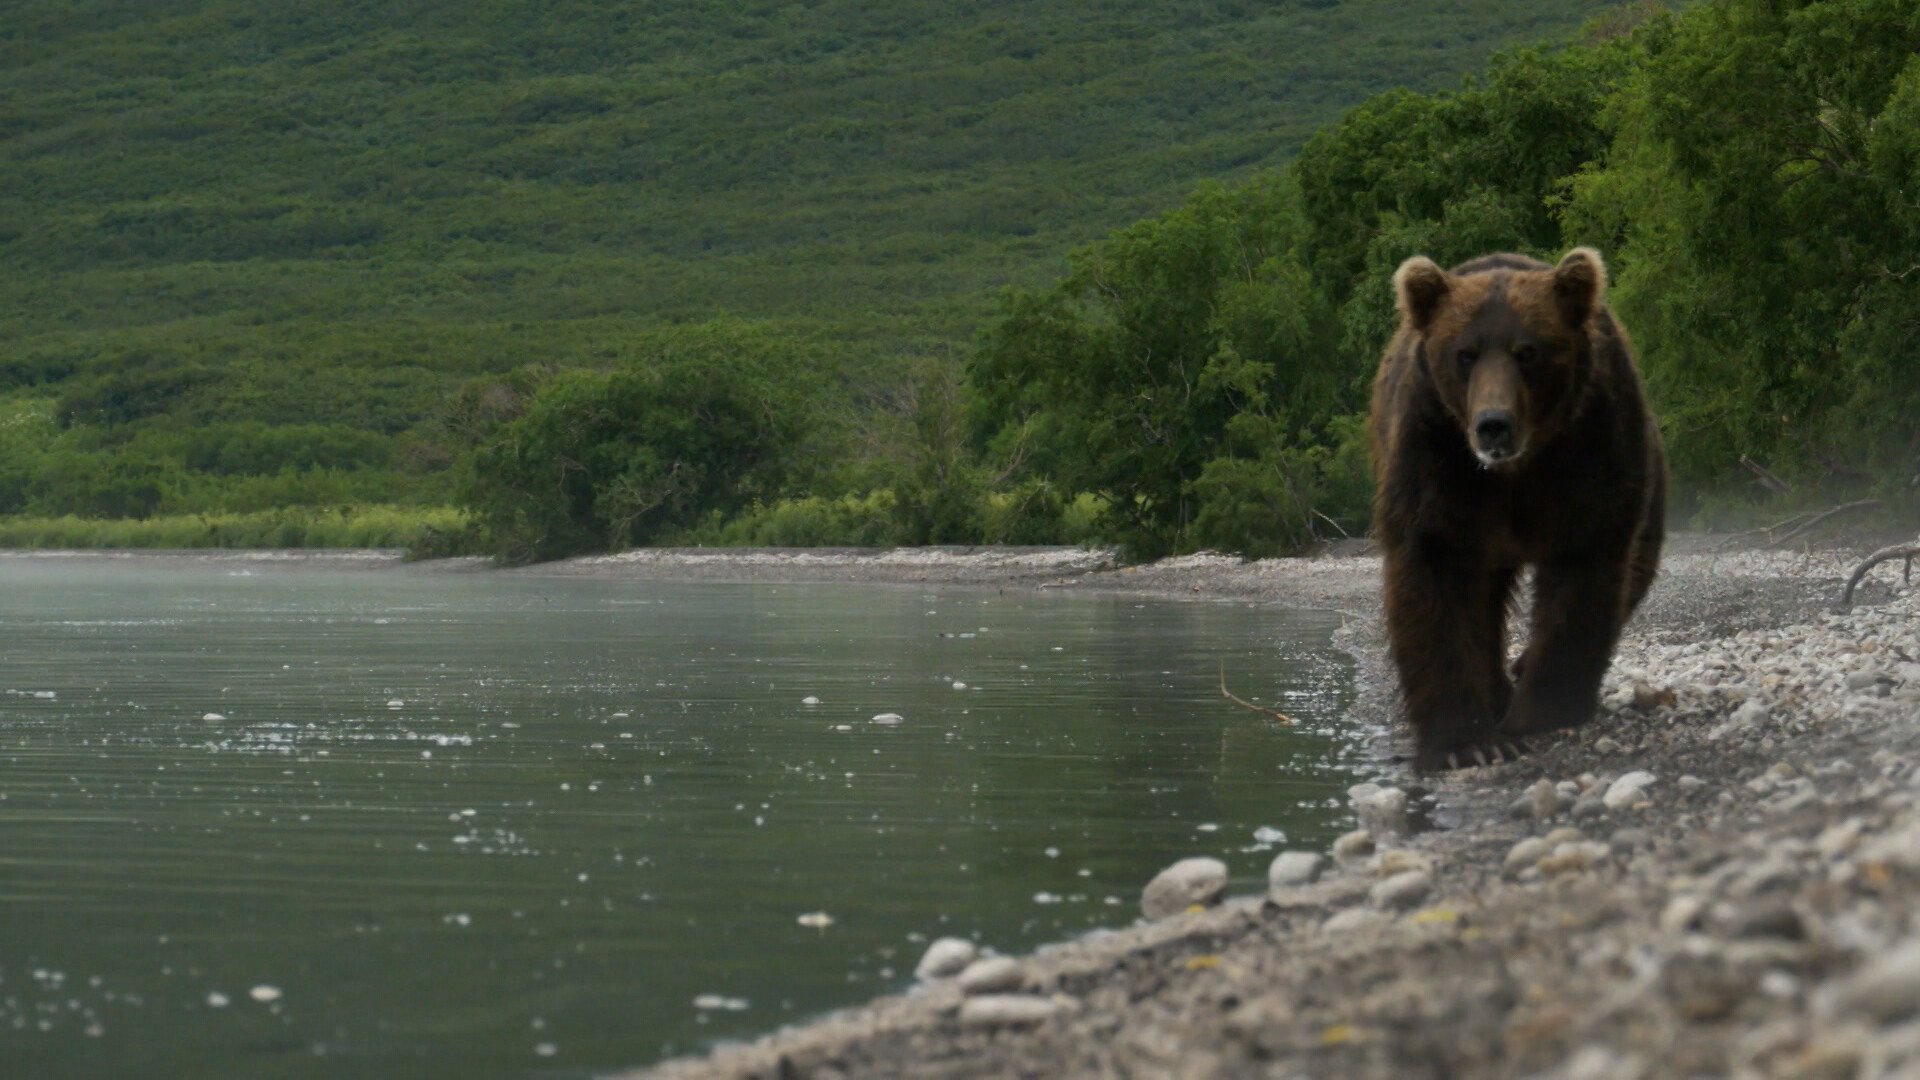 Bloedbad Kwade trouw Outlook Schooltv: Hoe leeft de bruine beer? - Een roofdier in Europa